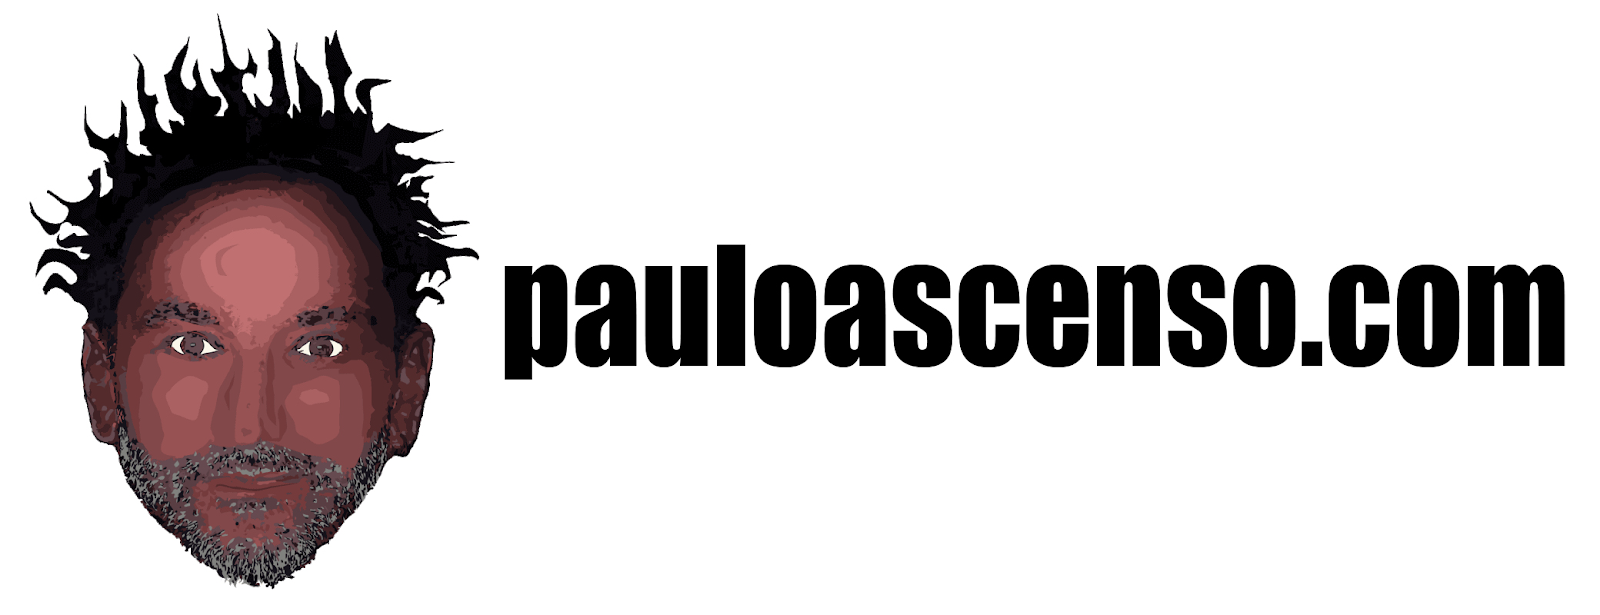 pauloascenso.com